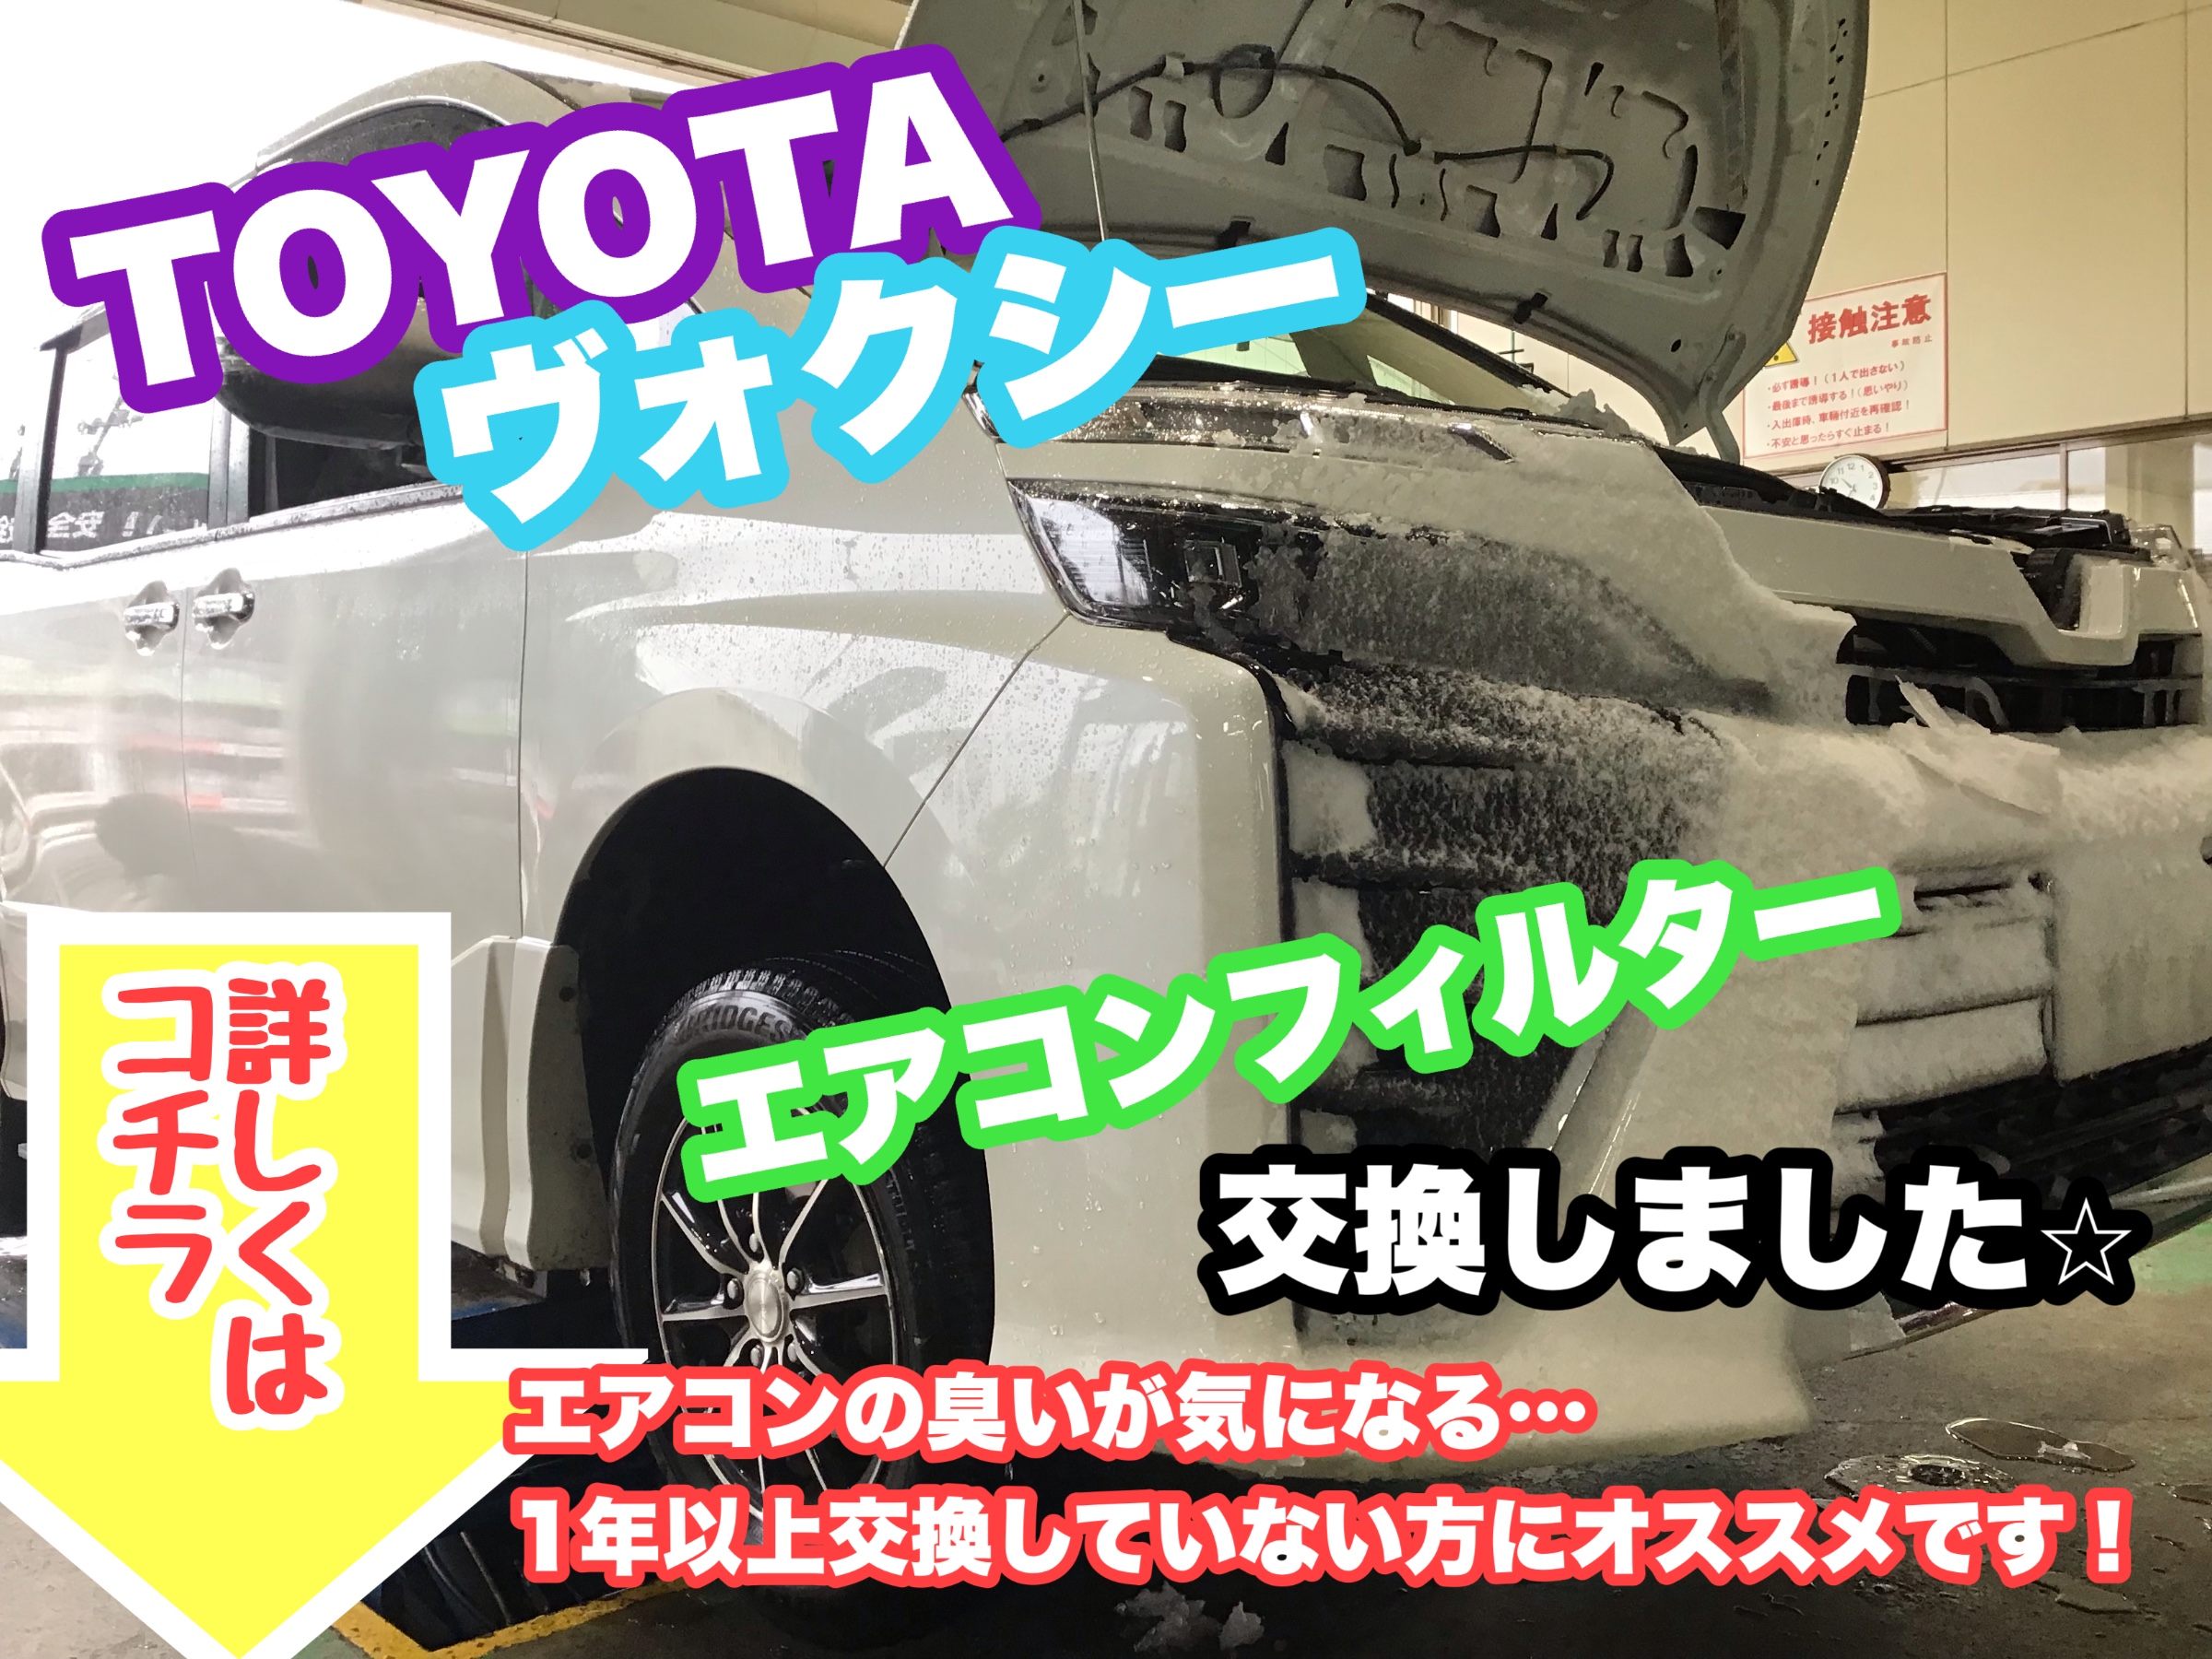 寒くなり暖房をつけると臭いが なんてありませんか Toyota ヴォクシー のエアコンフィルター 交換作業のご紹介です サービス事例 タイヤ館 県庁前 新潟県のタイヤ カー用品ショップ タイヤからはじまる トータルカーメンテナンス タイヤ館グループ